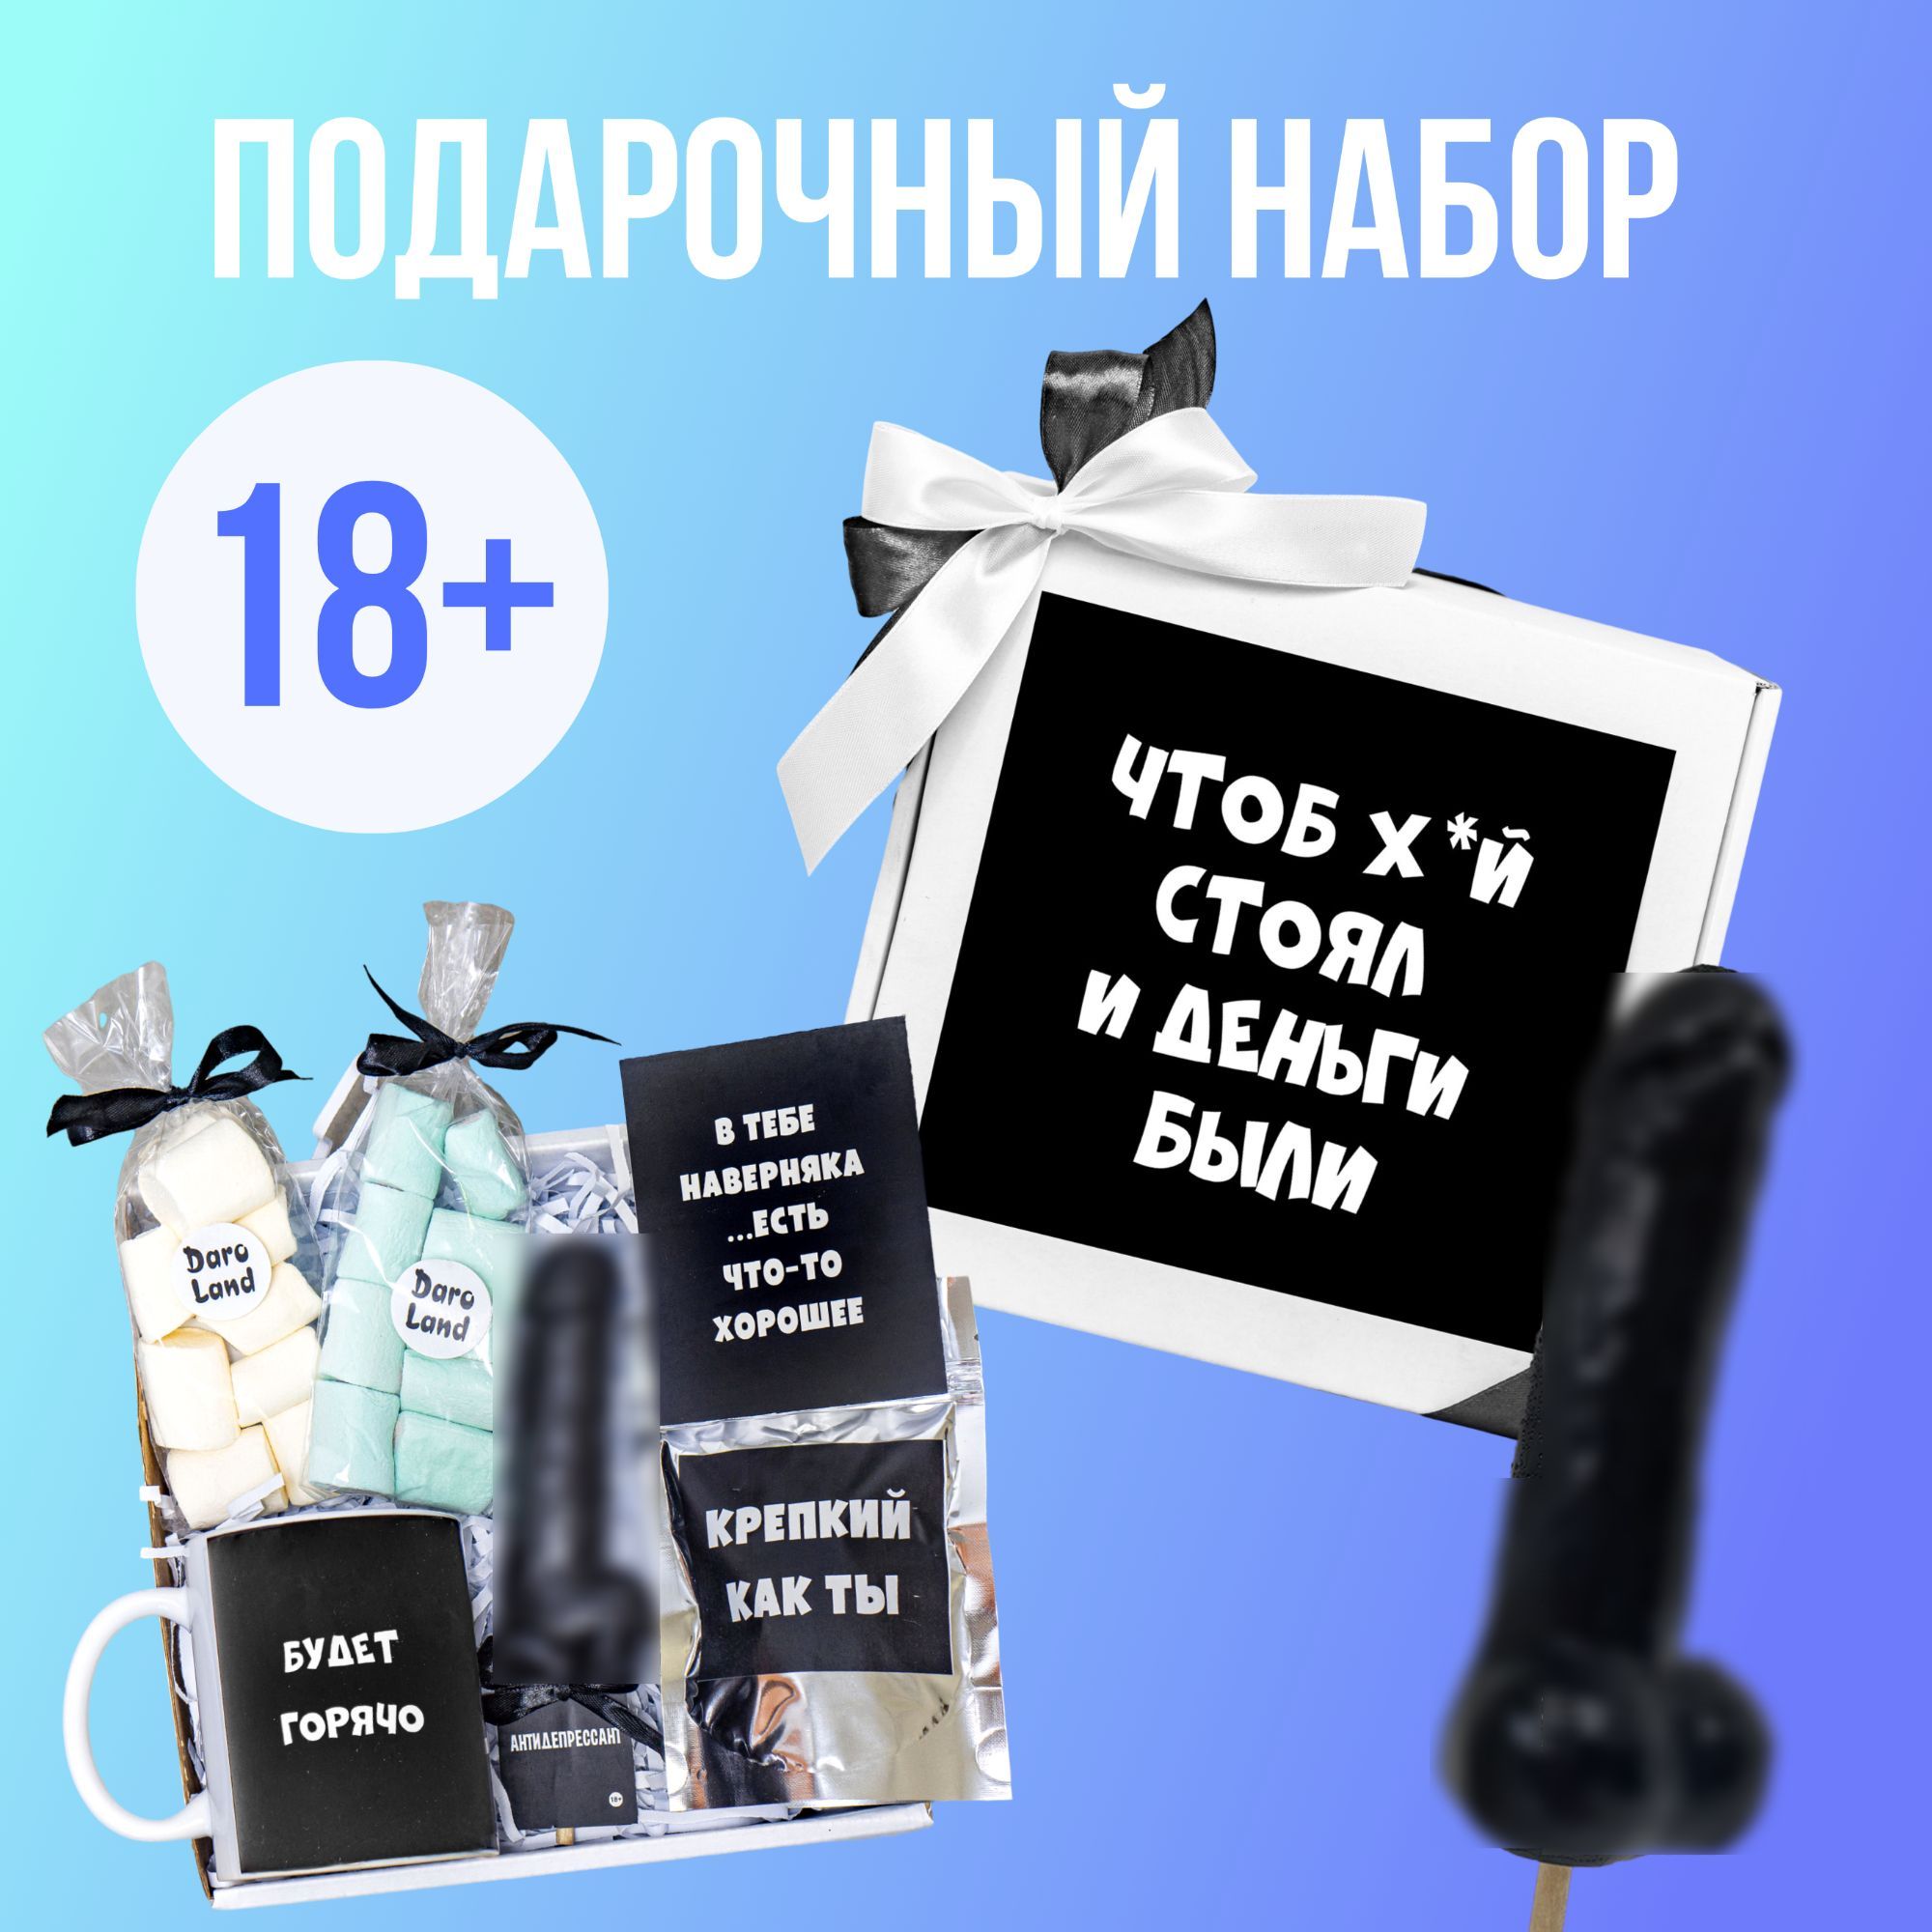 Купить оригинальный подарок другу на день рождения в интернет-магазине в Москве